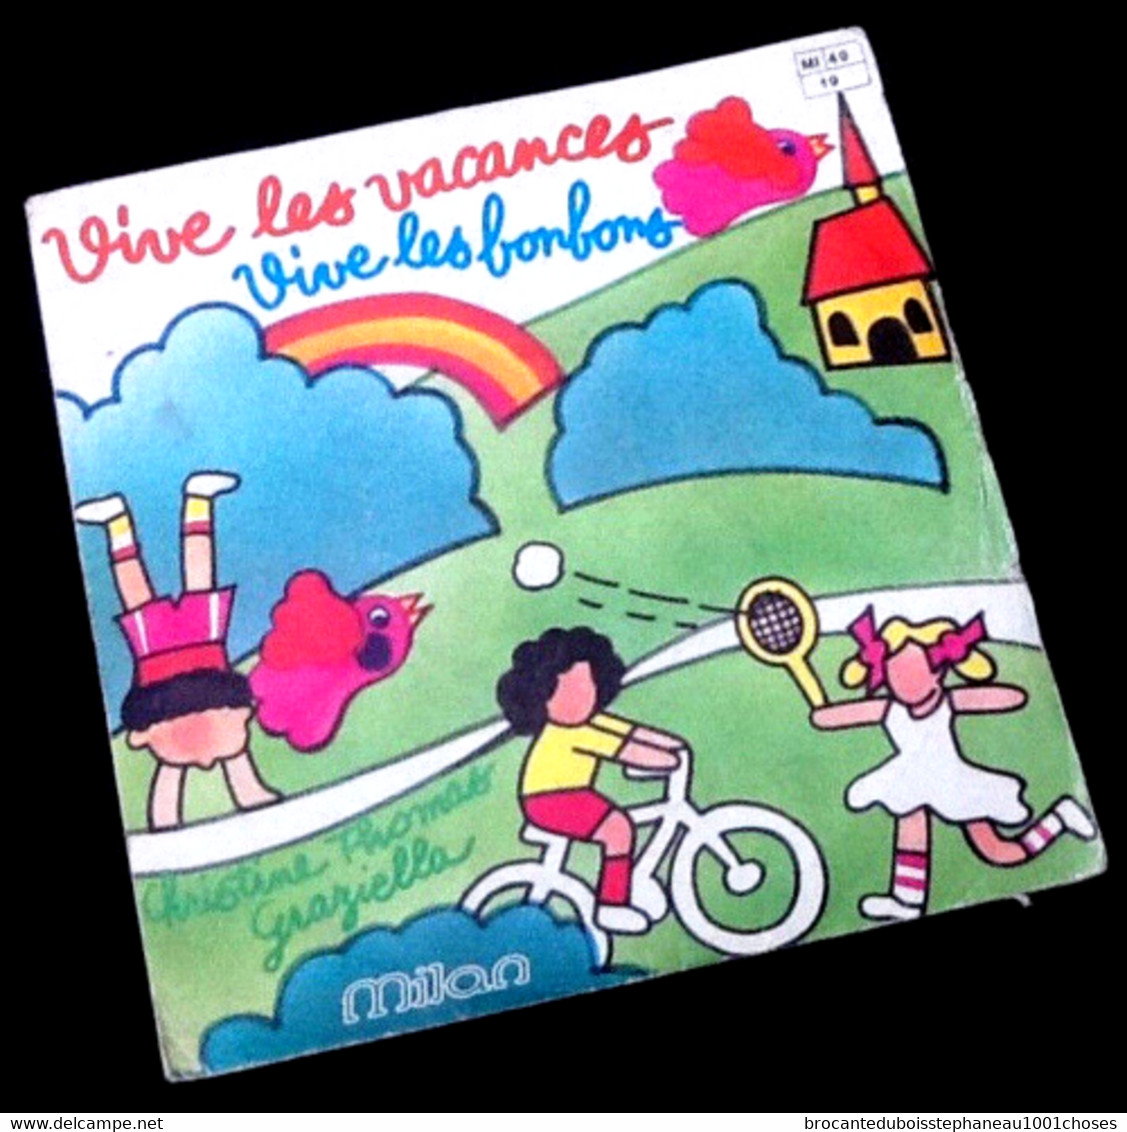 Vinyle 45 Tours Christine Thomas Graziella Vive Les Vacances Vive Les Bonbons (1980) Milan MI 40 - Enfants